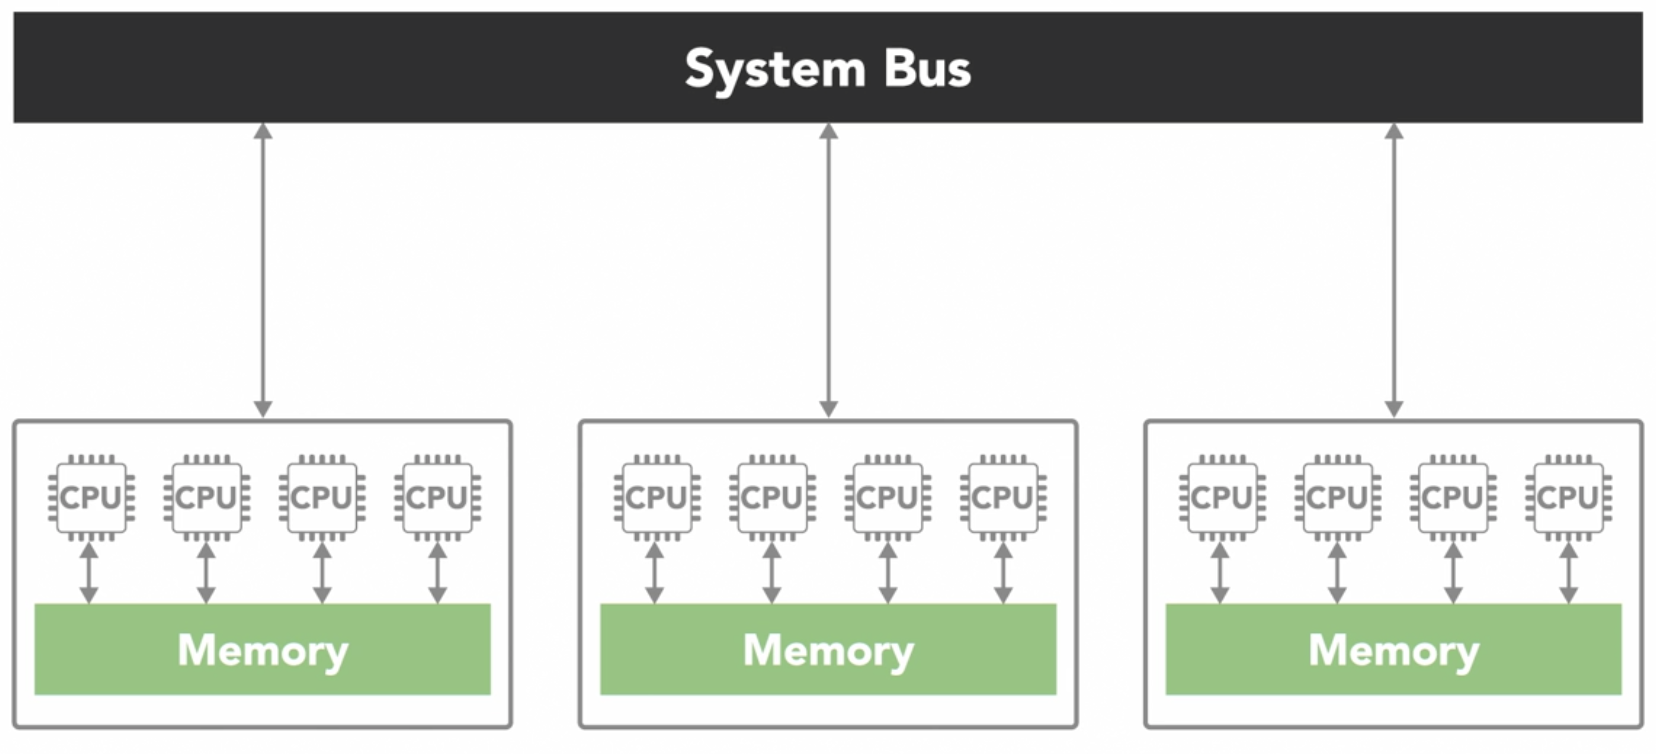 Non-uniform memory access